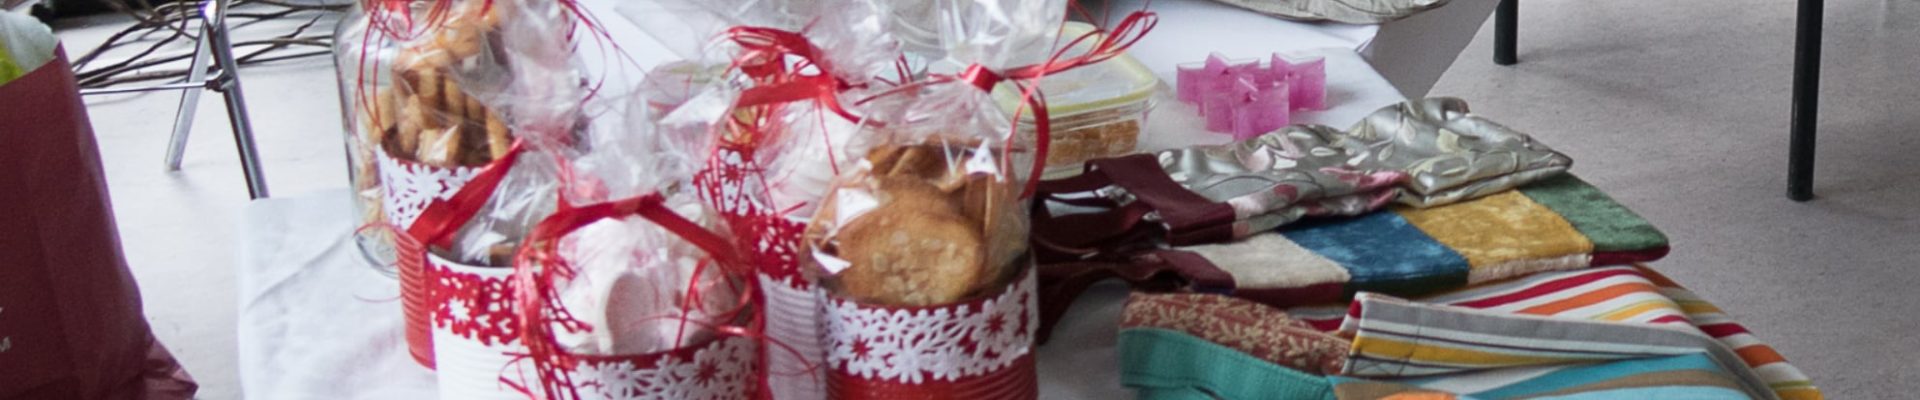 Paroisse protestante : vente d’objets et cadeaux de Noël